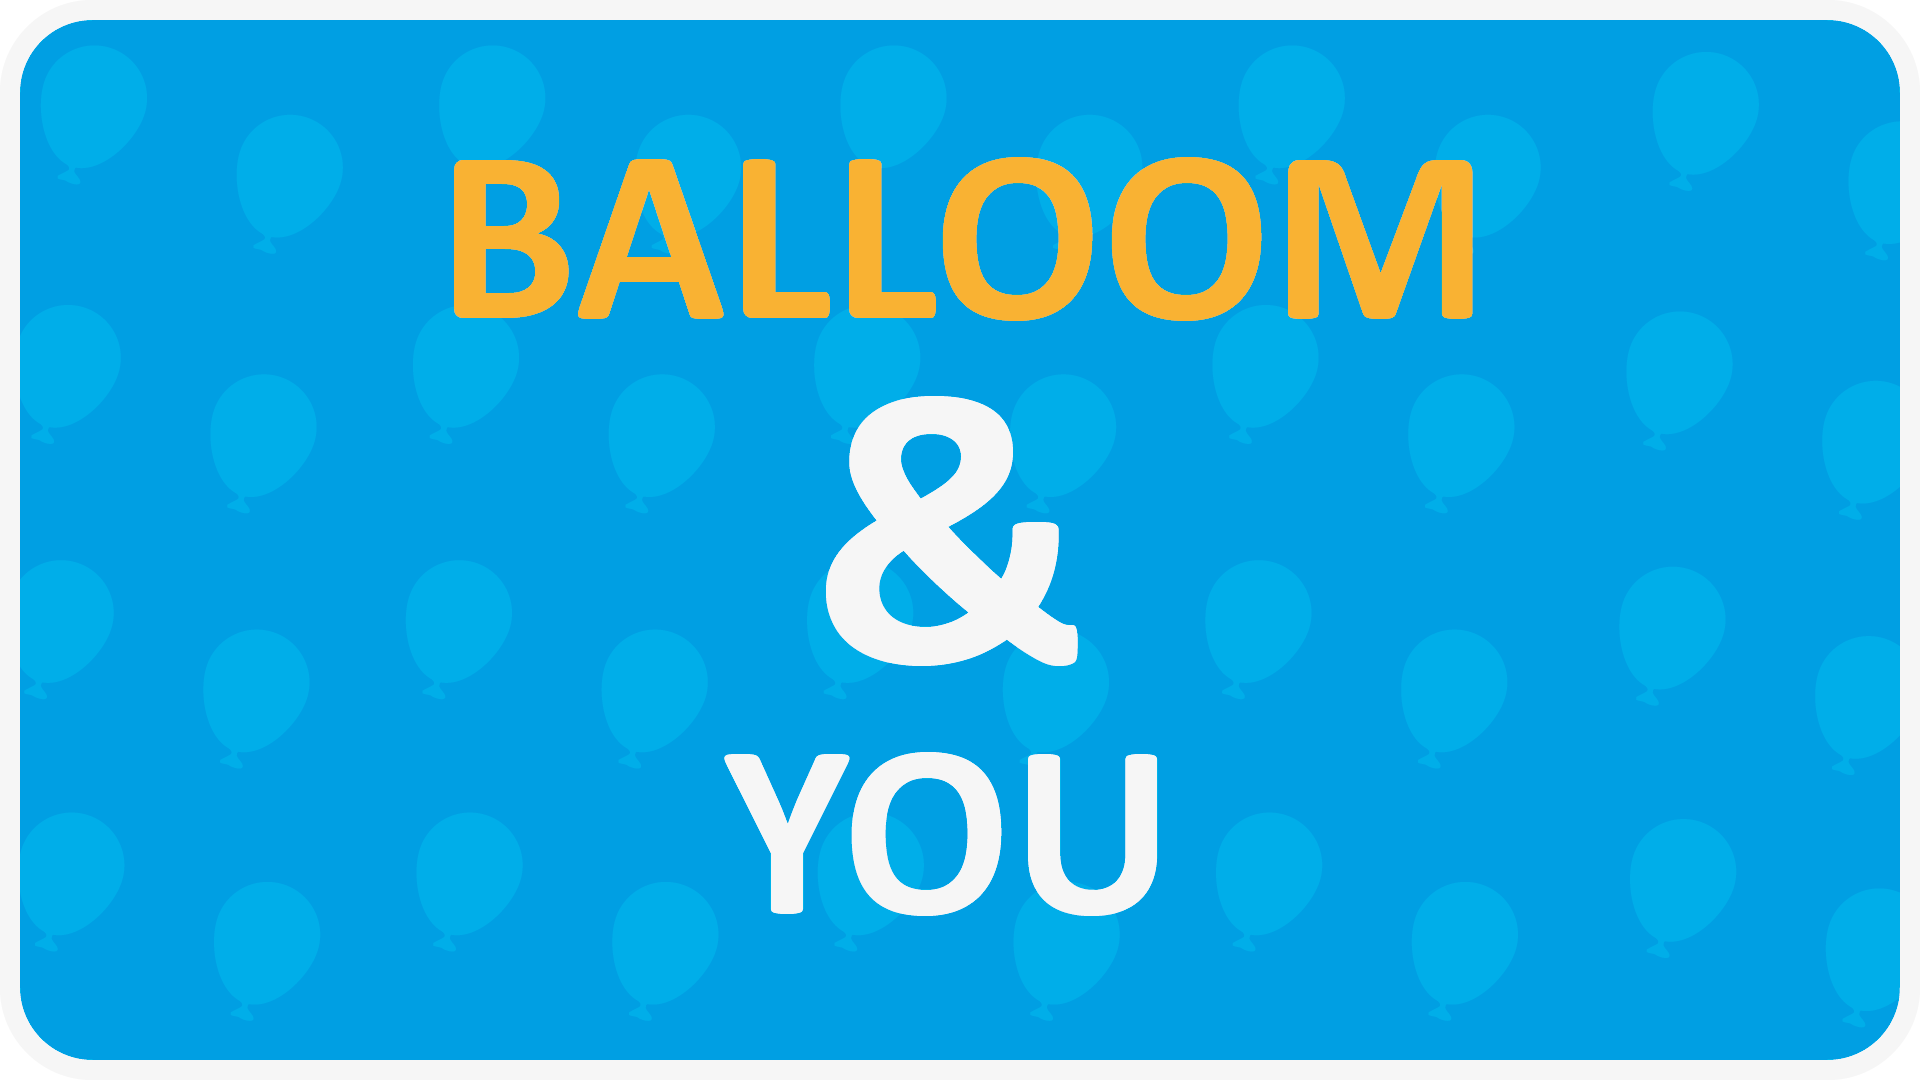 Balloom & You